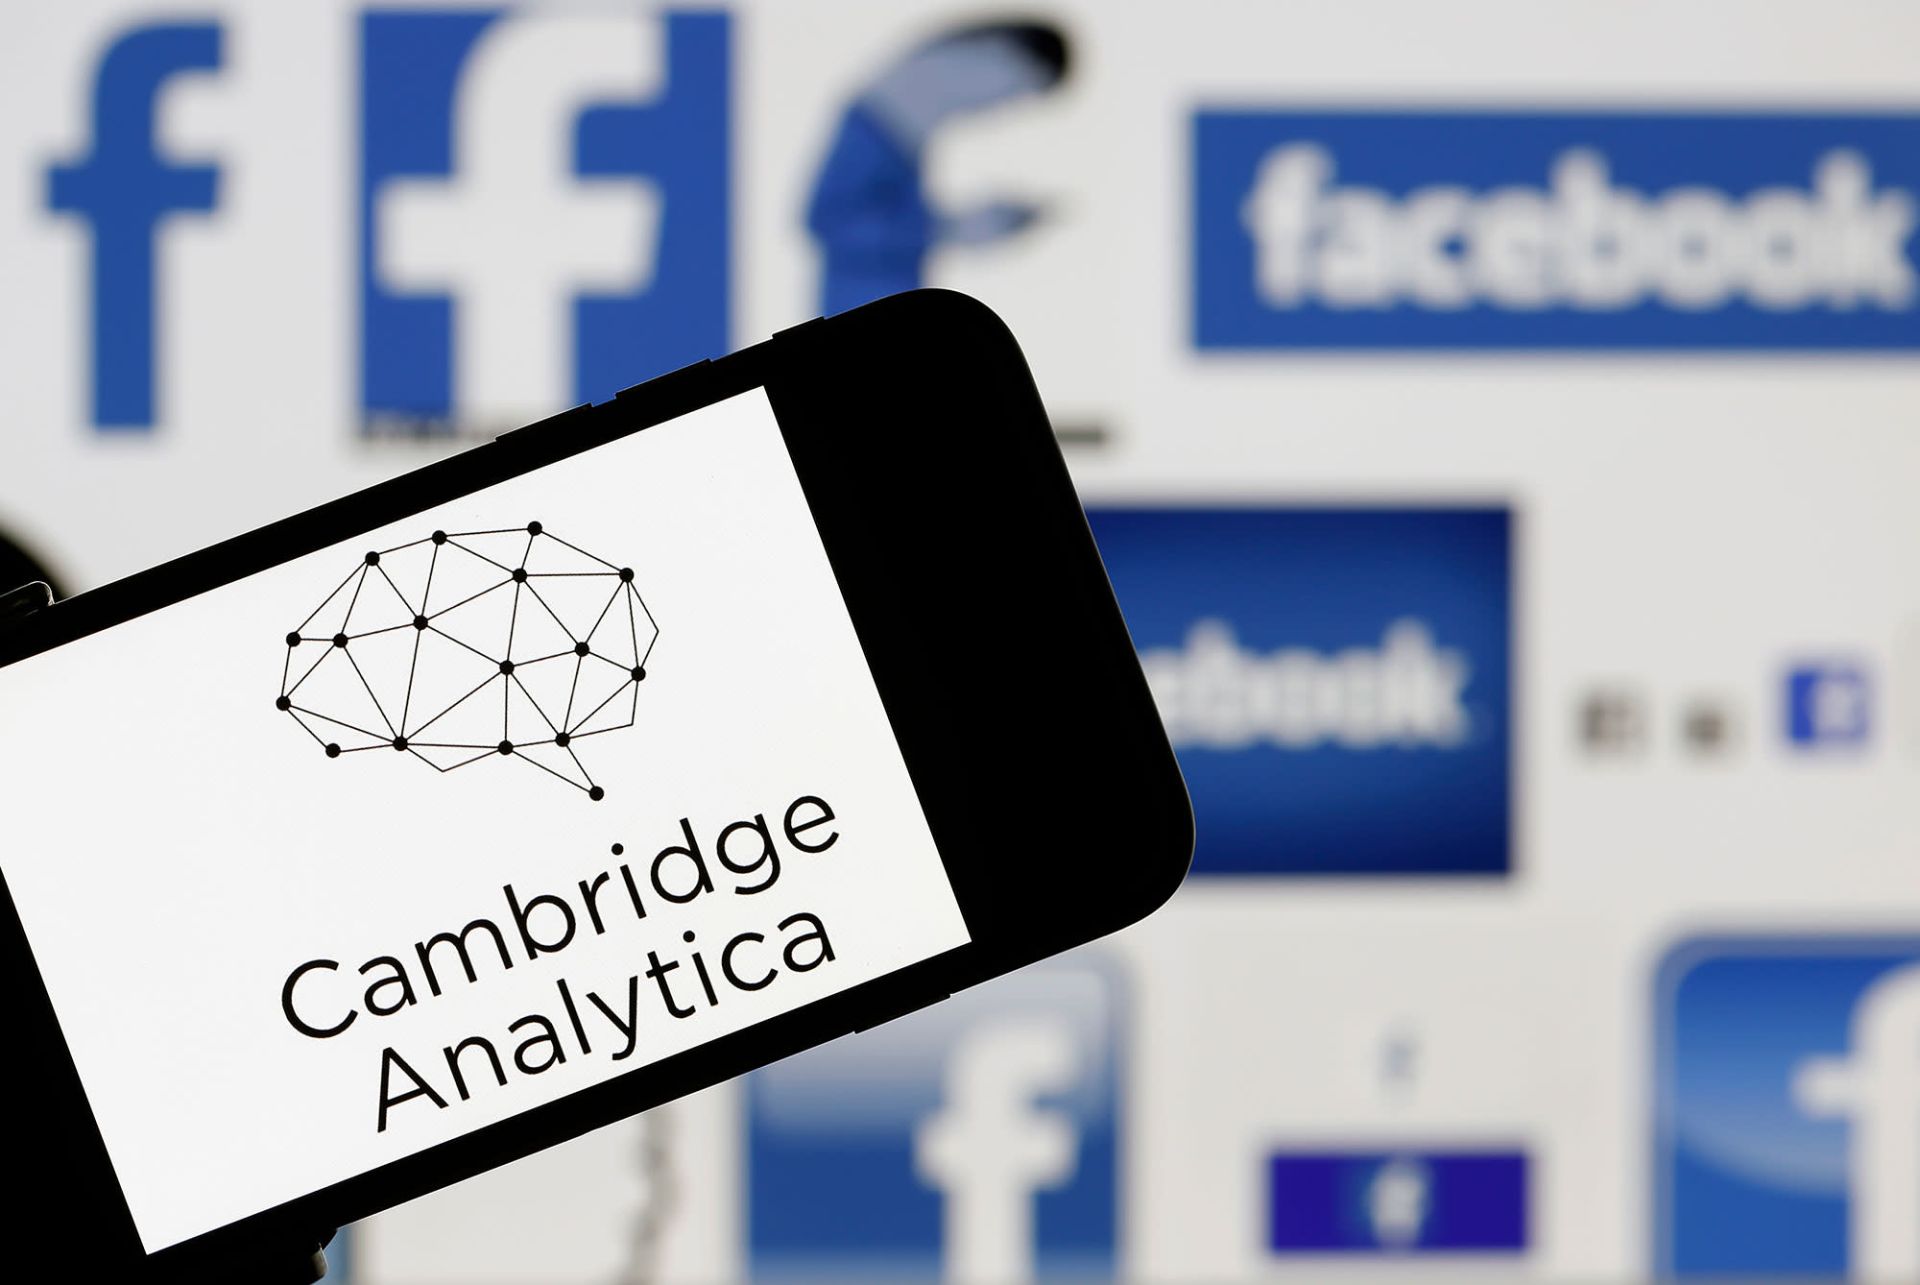 mạng xã hội Facebook đã bị cáo buộc để cho các bên thứ ba, như công ty phân tích Cambridge Analytica, tiếp cận những dữ liệu riêng tư của người dùng.